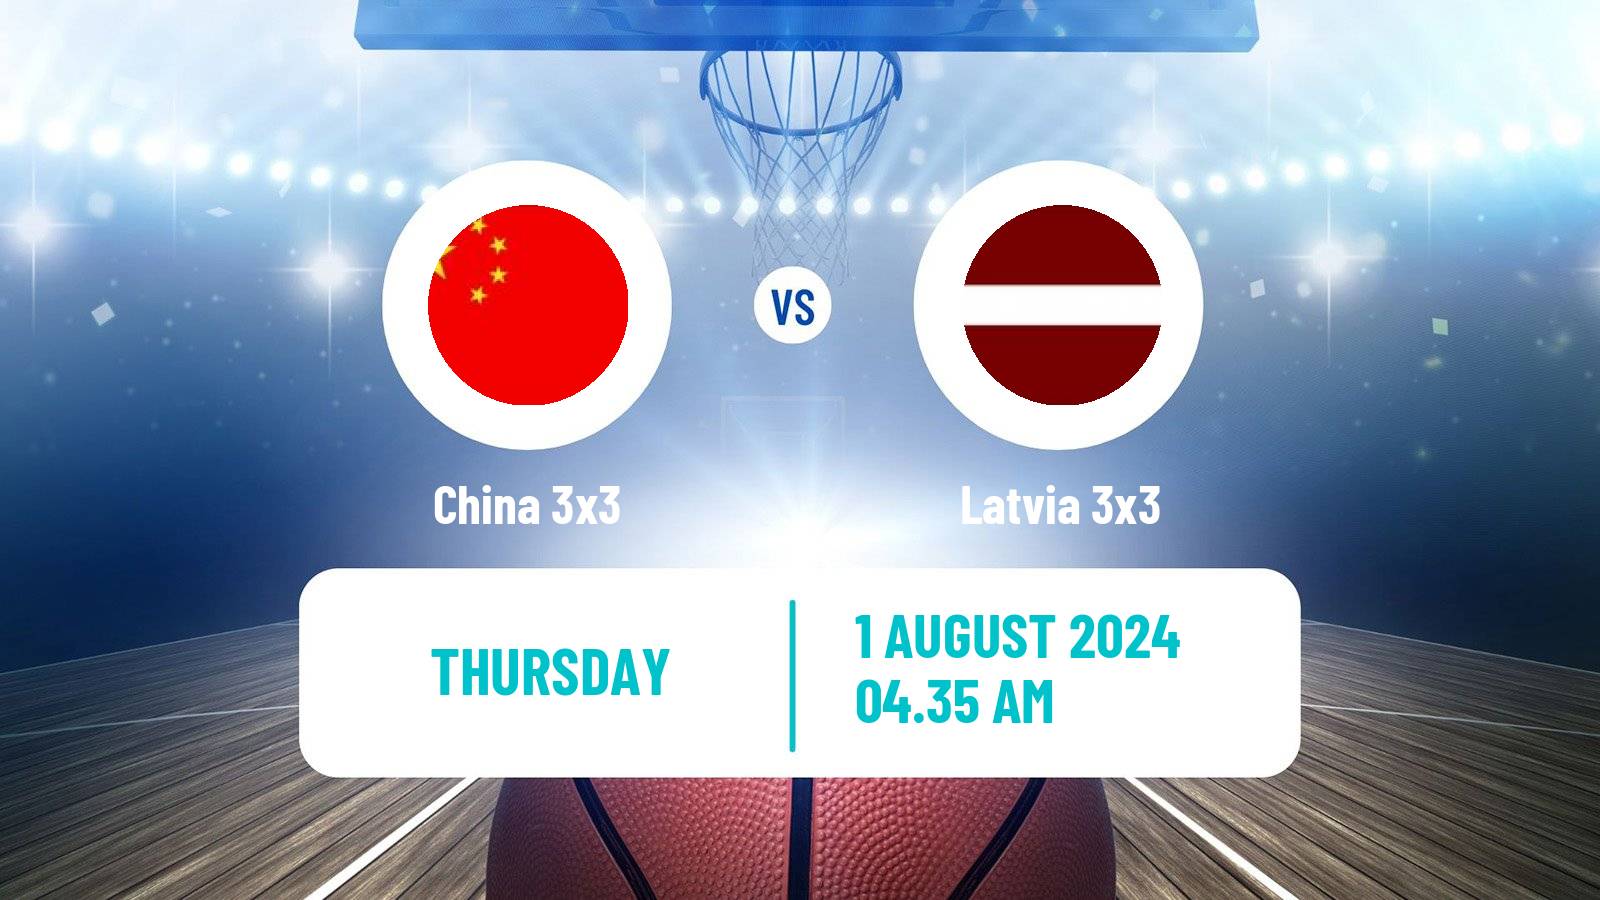 Basketball Olympic Games Basketball 3x3 China 3x3 - Latvia 3x3